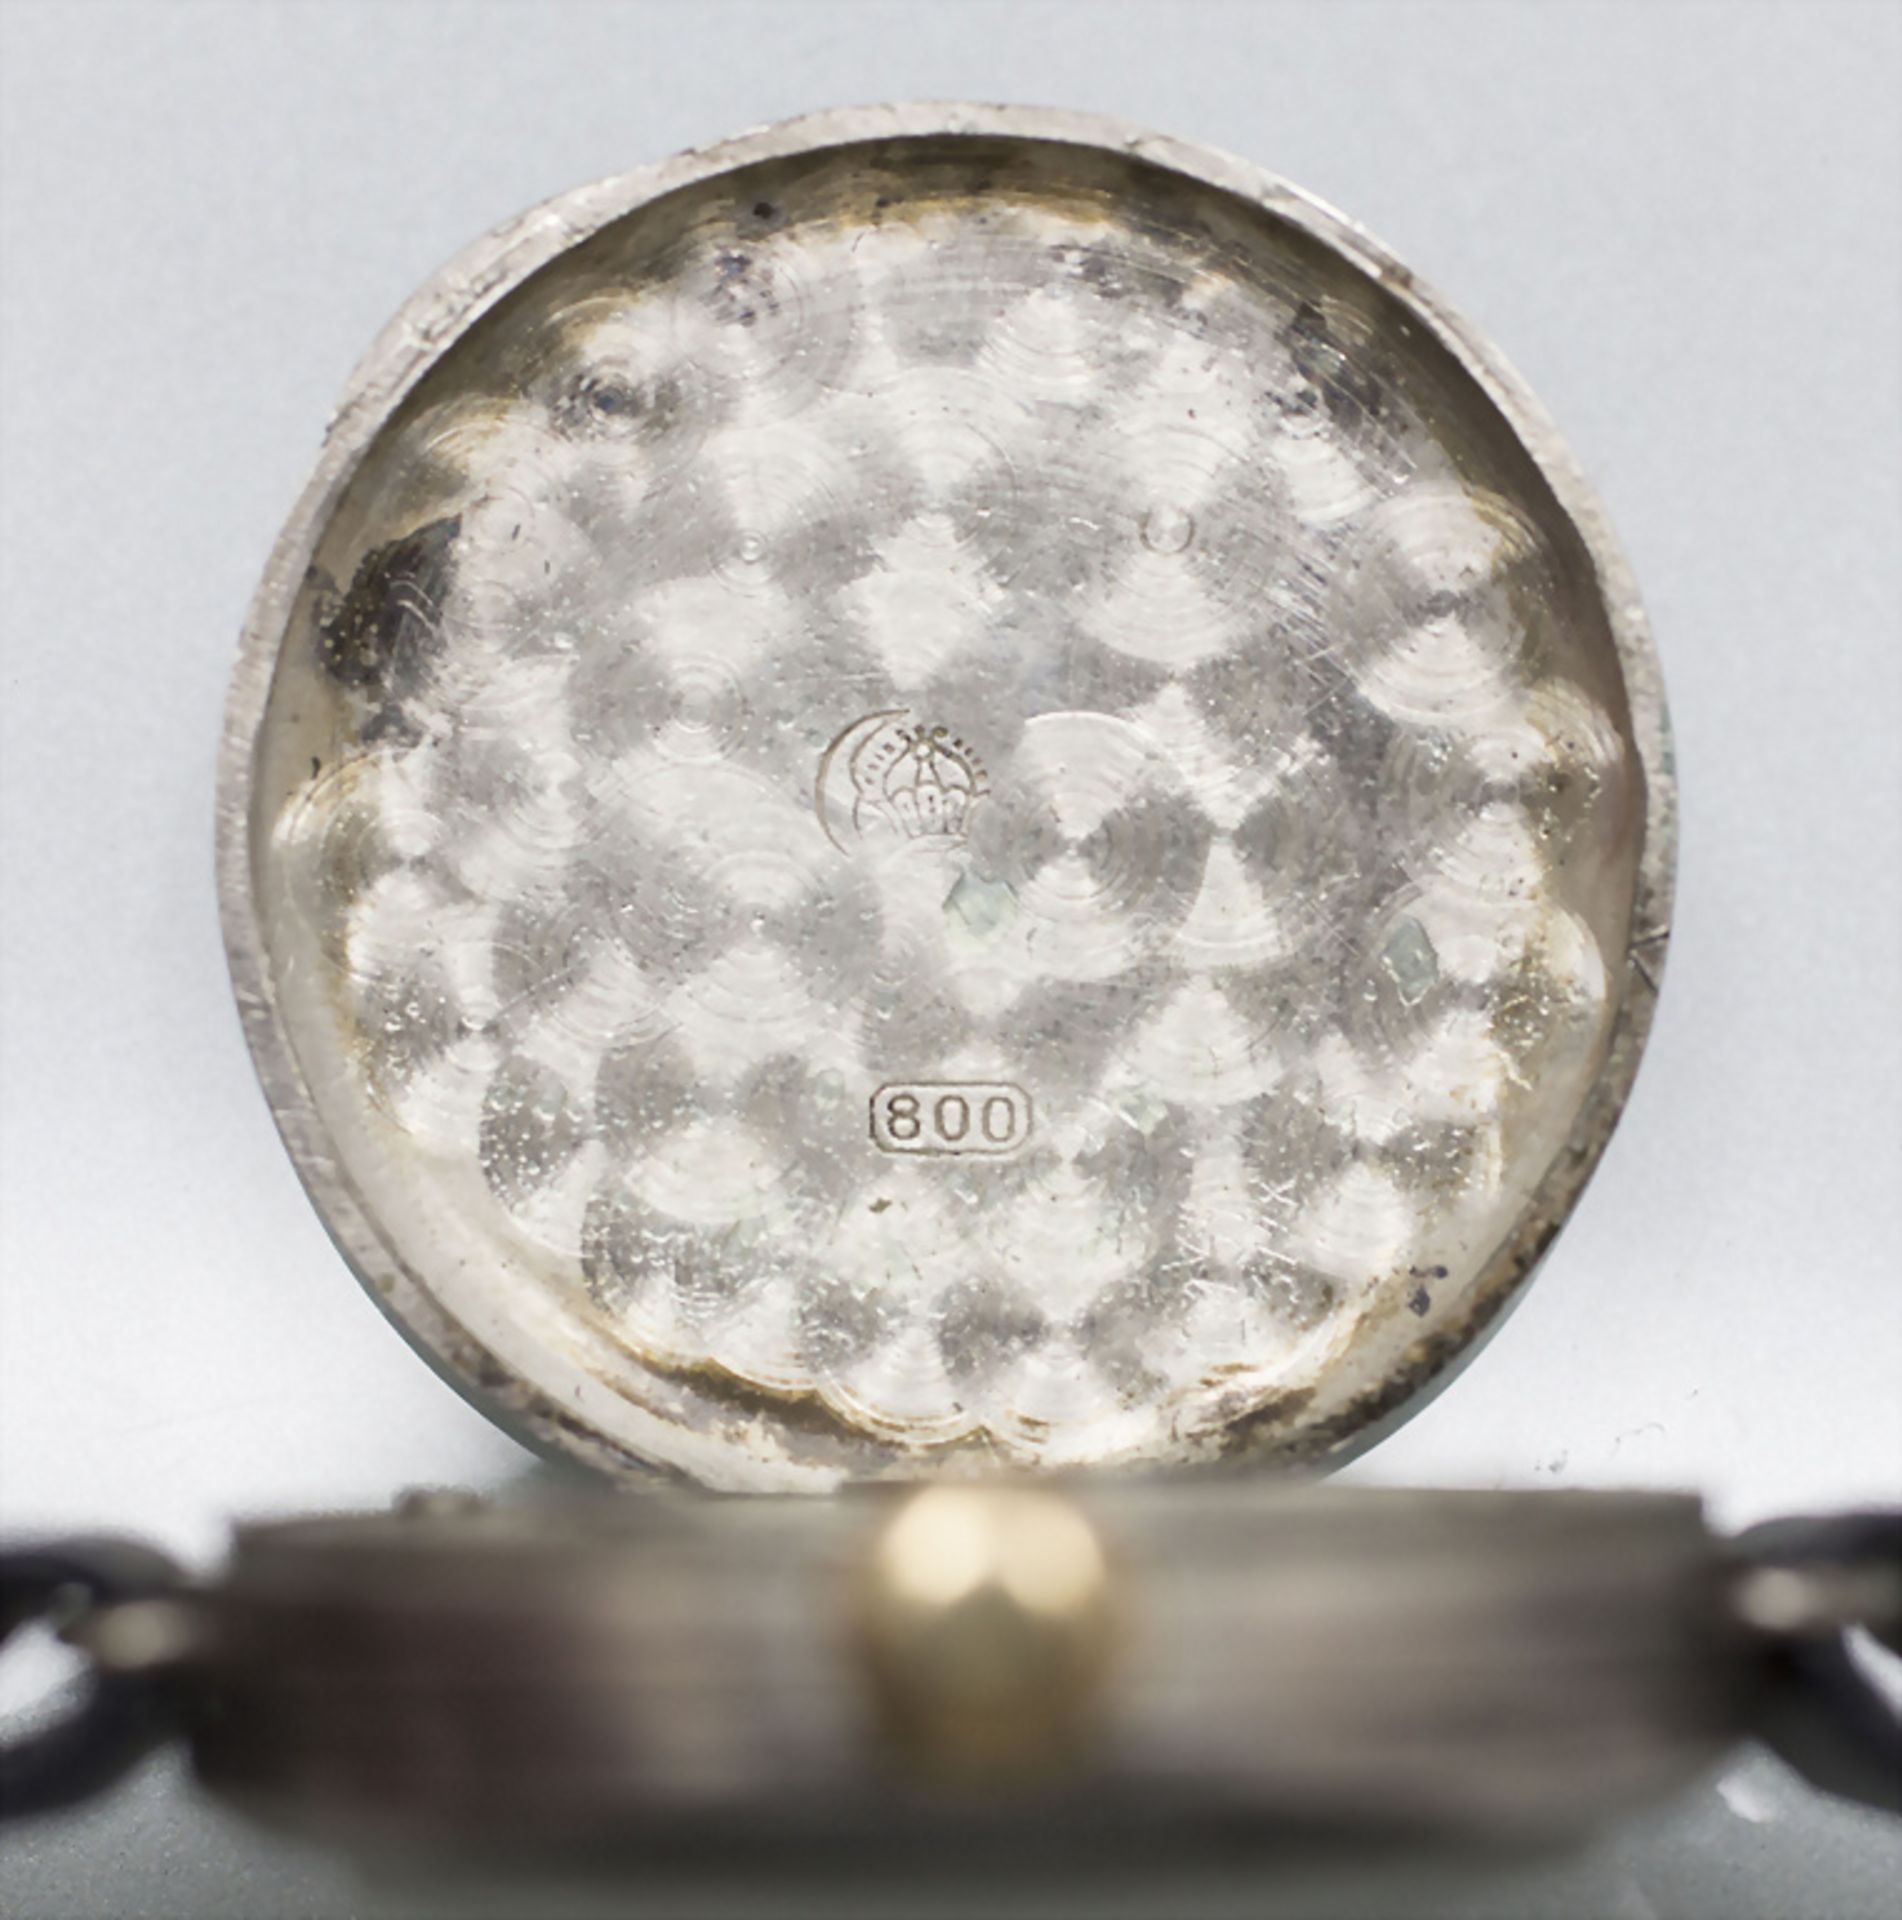 Damenuhr / A silver ladies watch, Rolex, um 1925 - Image 3 of 5